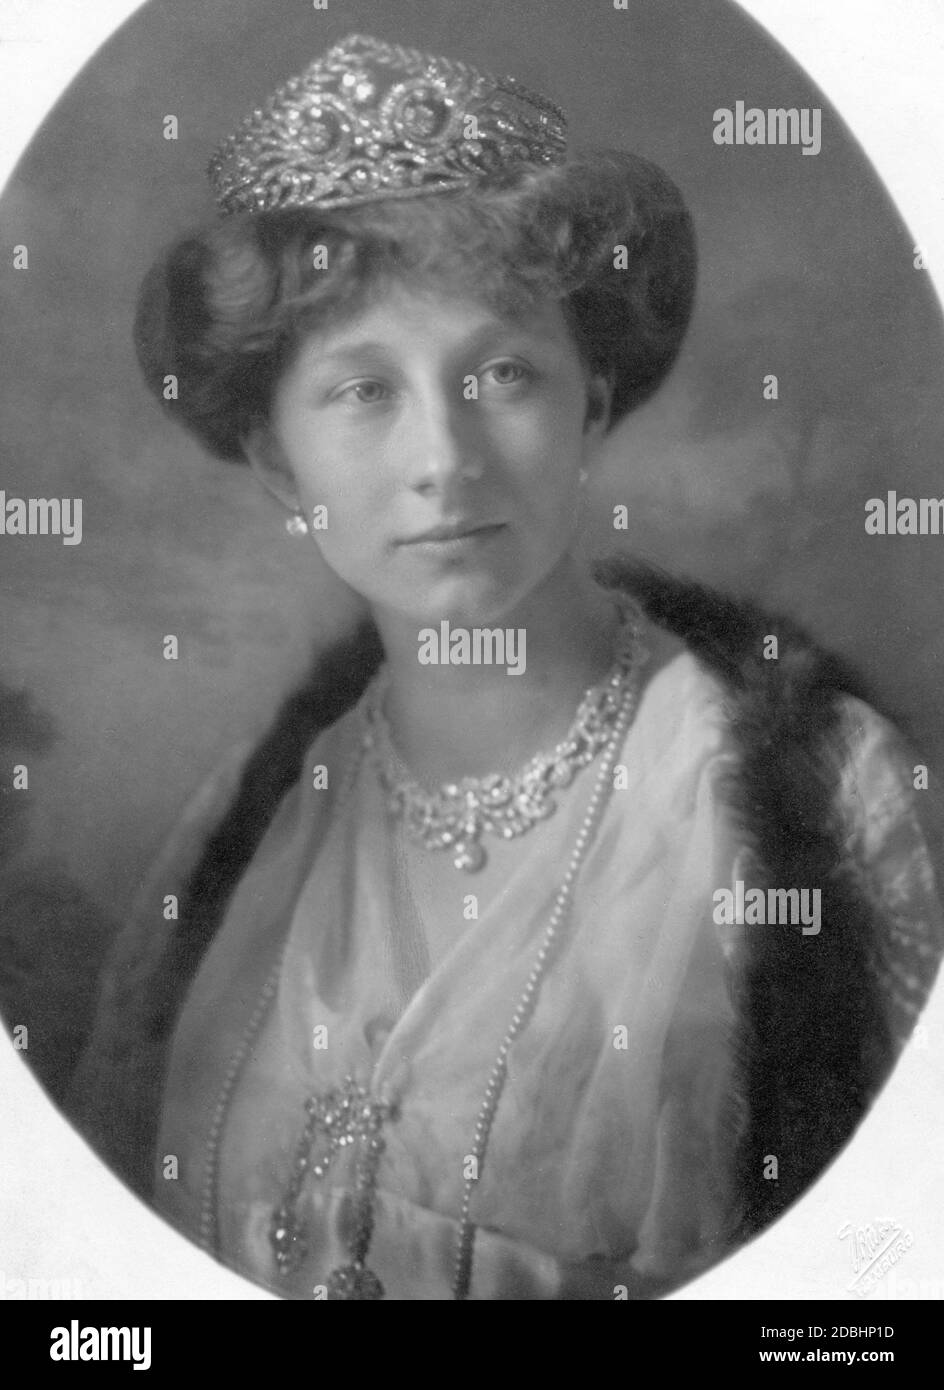 El retrato muestra a la princesa Victoria Louise de Prusia en 1913, cuando se casó con el duque de Brunswick, Ernst August. Foto tomada por el fotógrafo de la corte E. Bieber en Hamburgo. Foto de stock